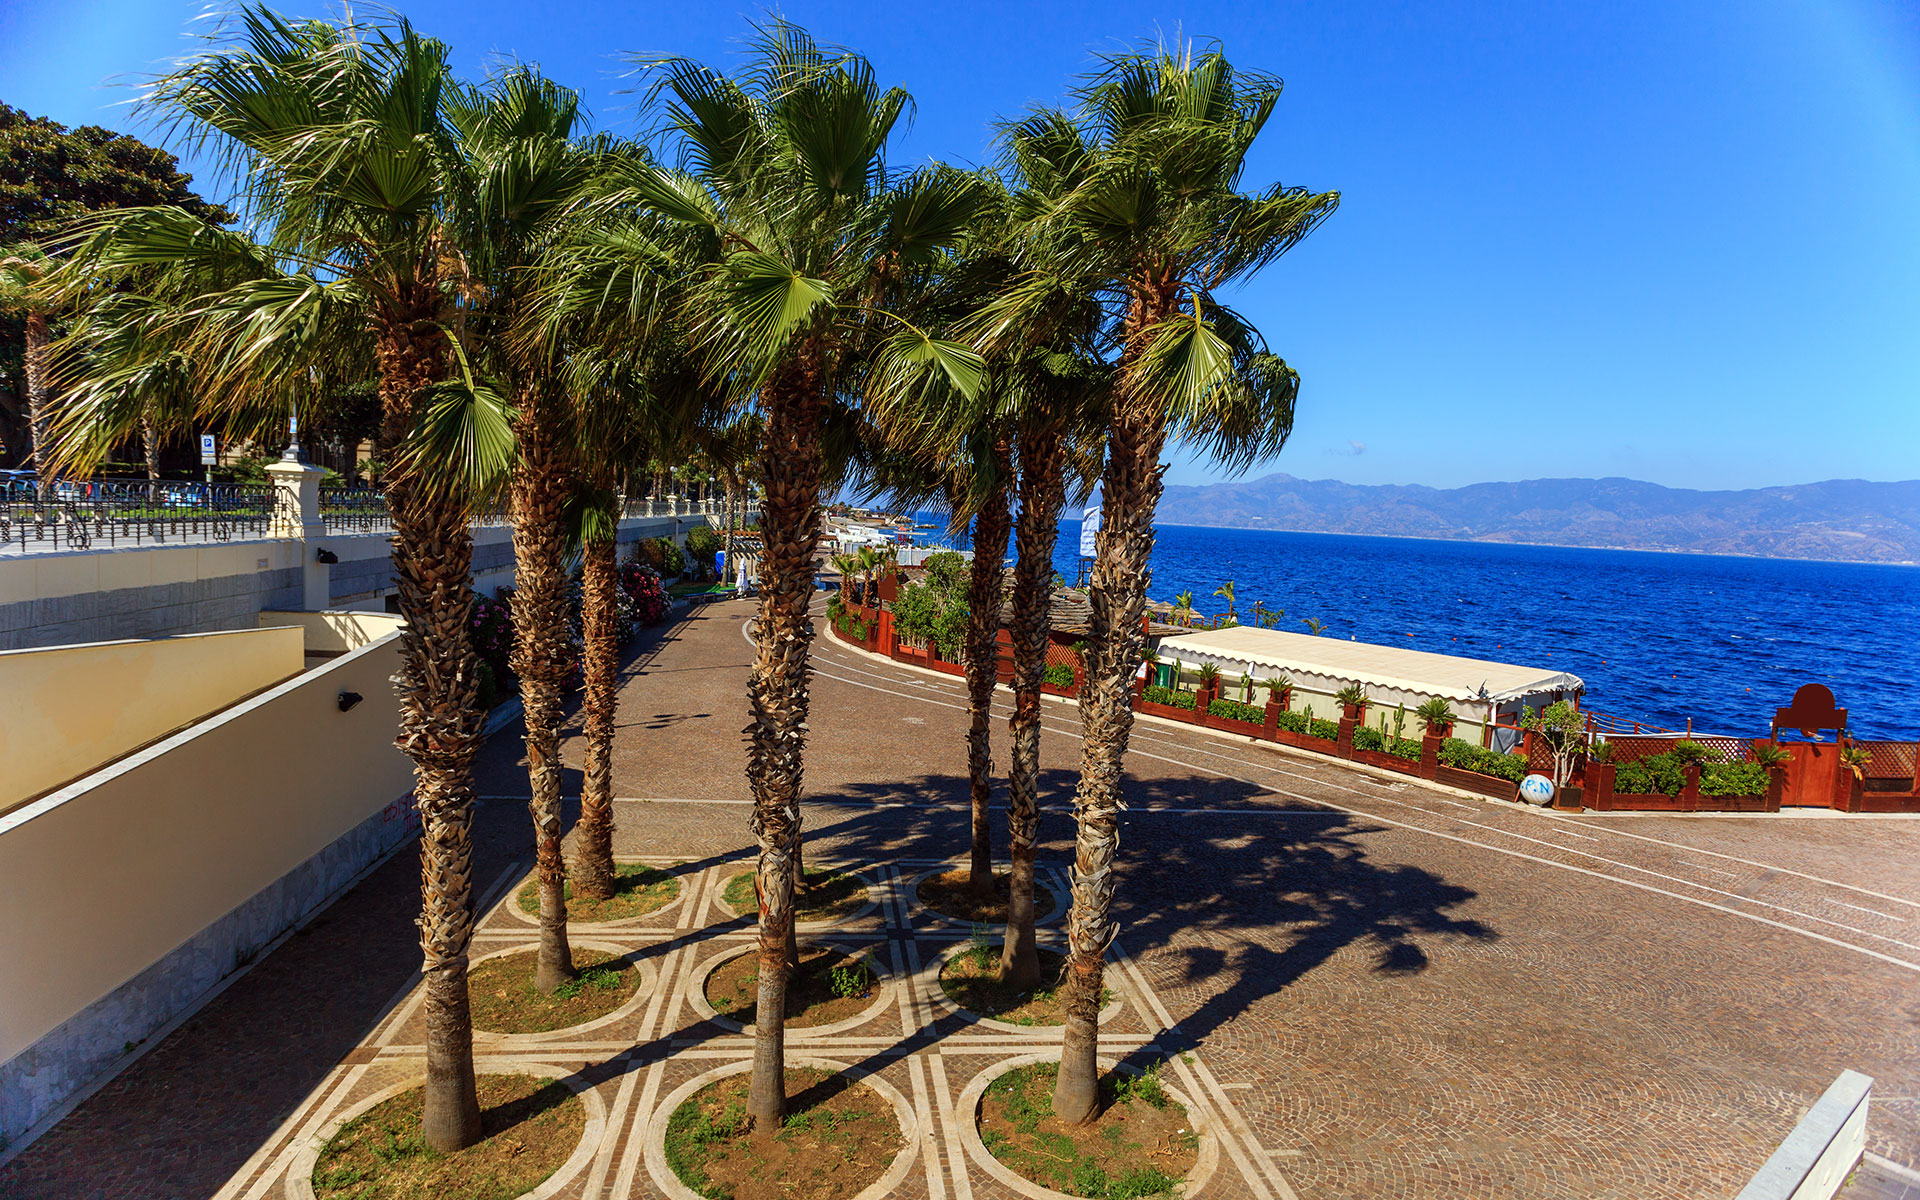 The promenade at Reggio di Calabria with Sicily in the distance (photo © Nata_rass / dreamstime.com)